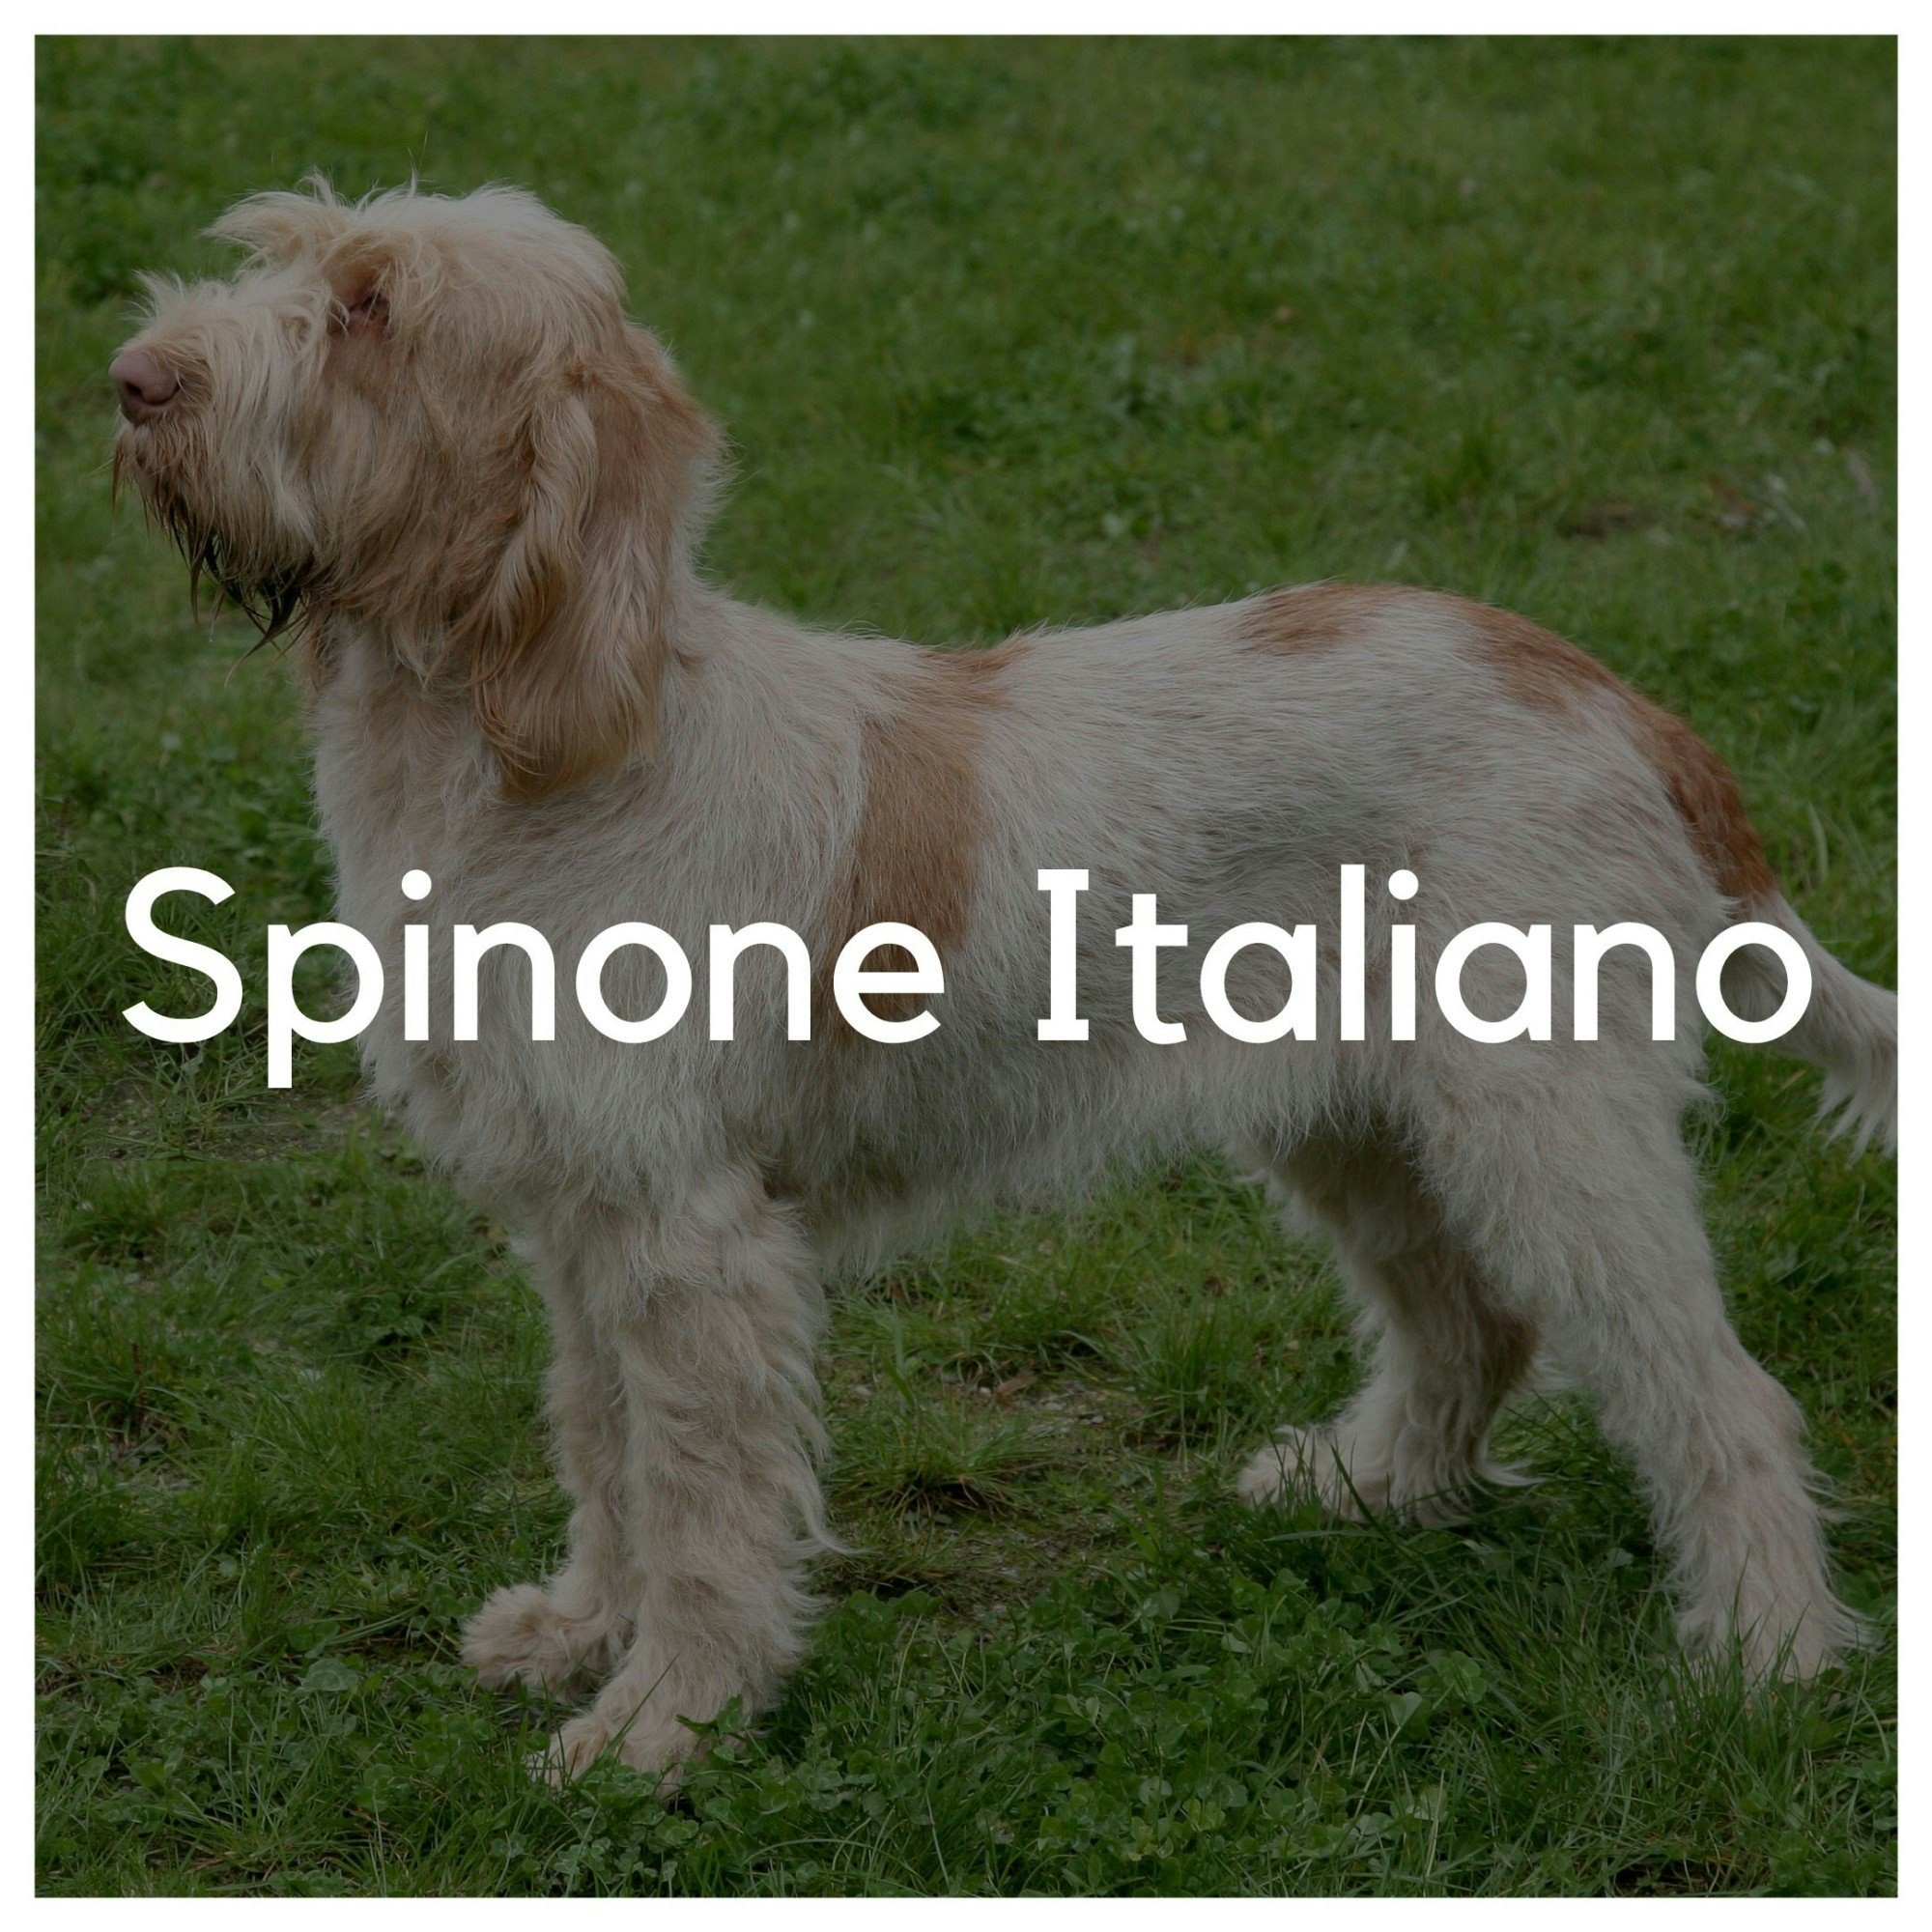 Spinone Italiano - Liwa Design